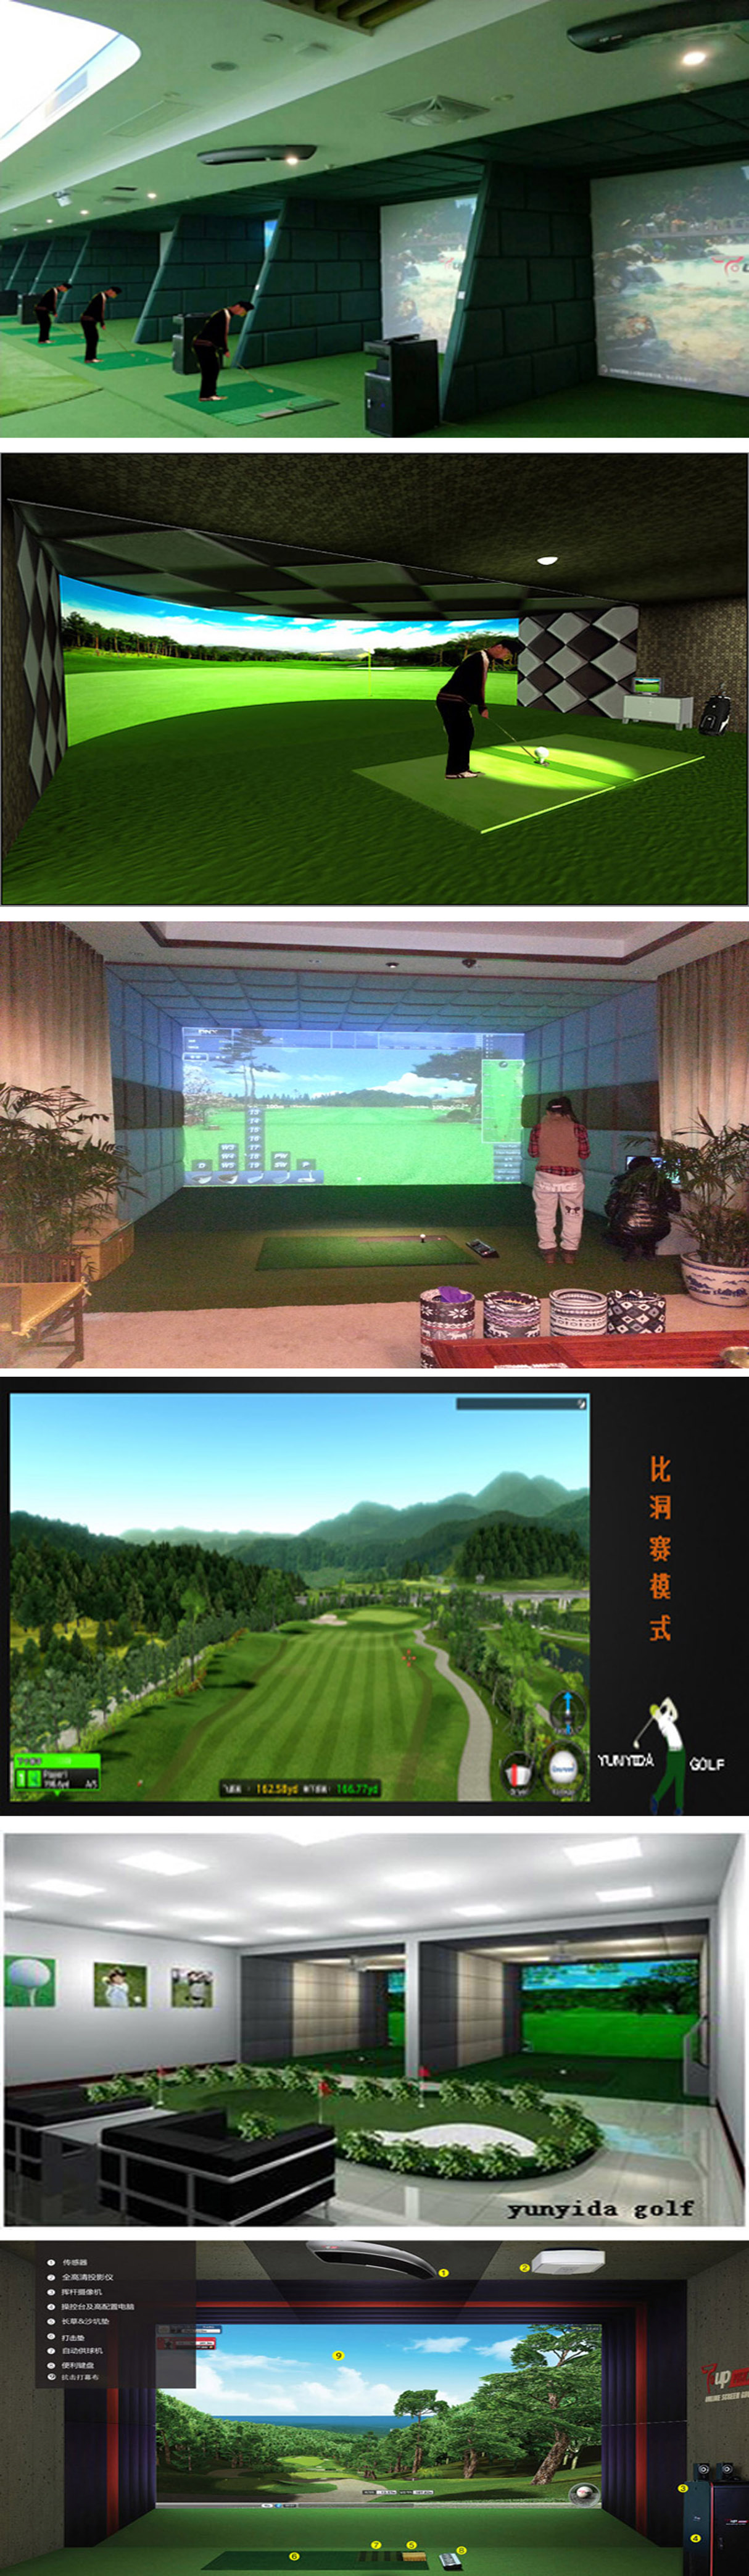 高速摄像高尔夫模拟练习 442.jpg